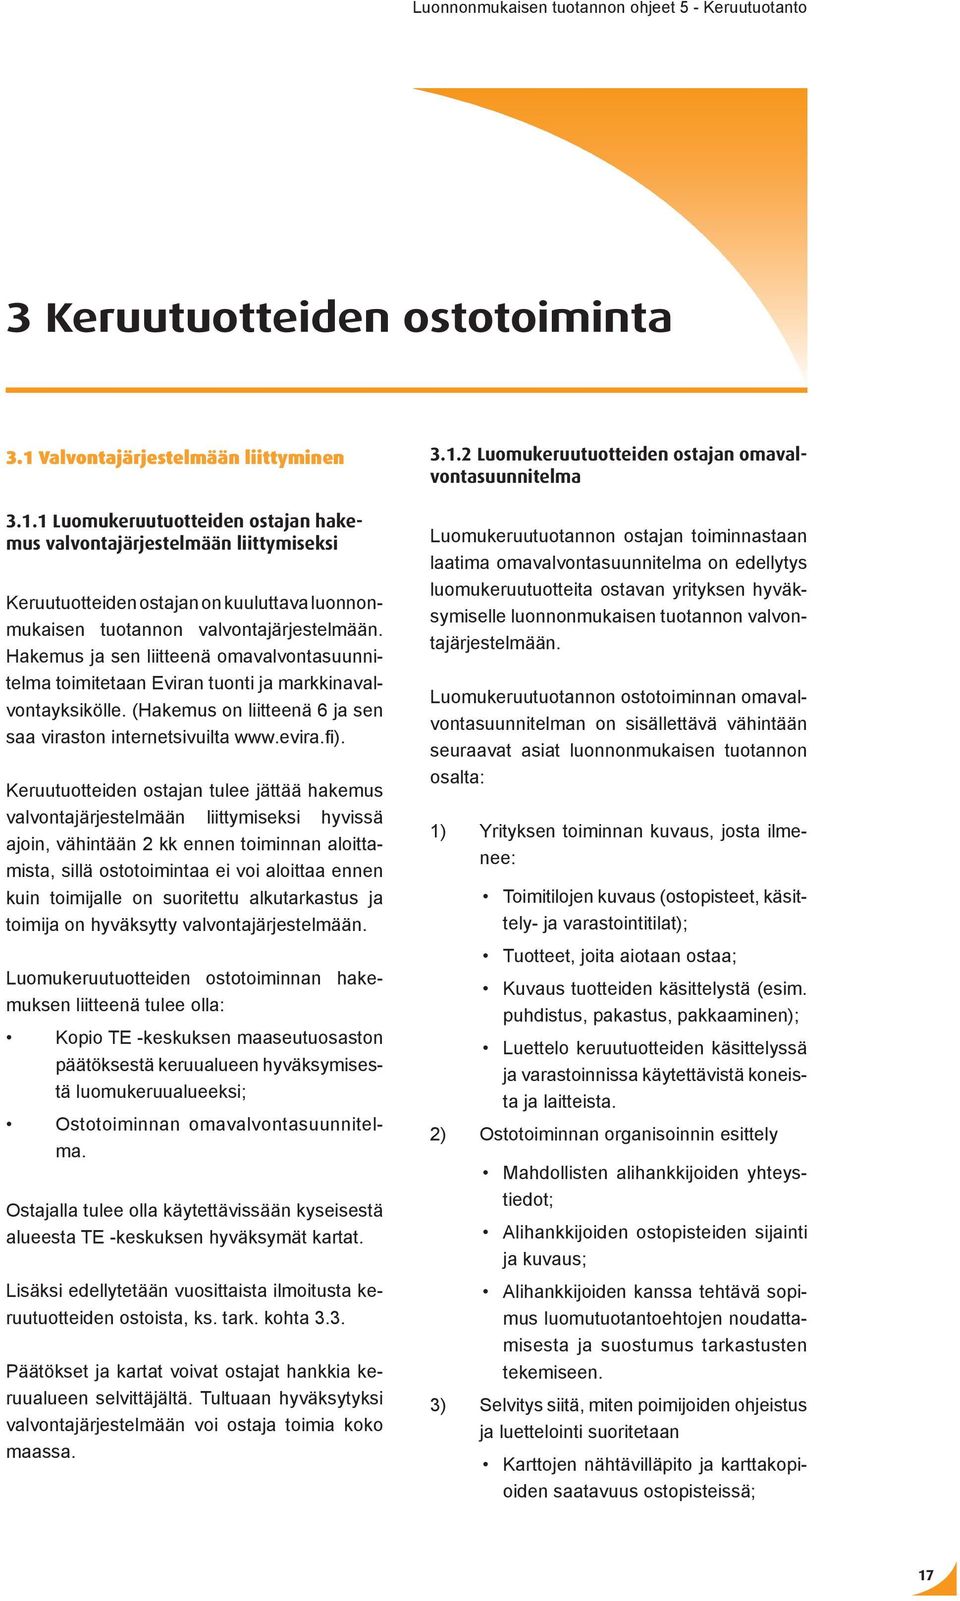 Hakemus ja sen liitteenä omavalvontasuunnitelma toimitetaan Eviran tuonti ja markkinavalvontayksikölle. (Hakemus on liitteenä 6 ja sen saa viraston internetsivuilta www.evira.fi).